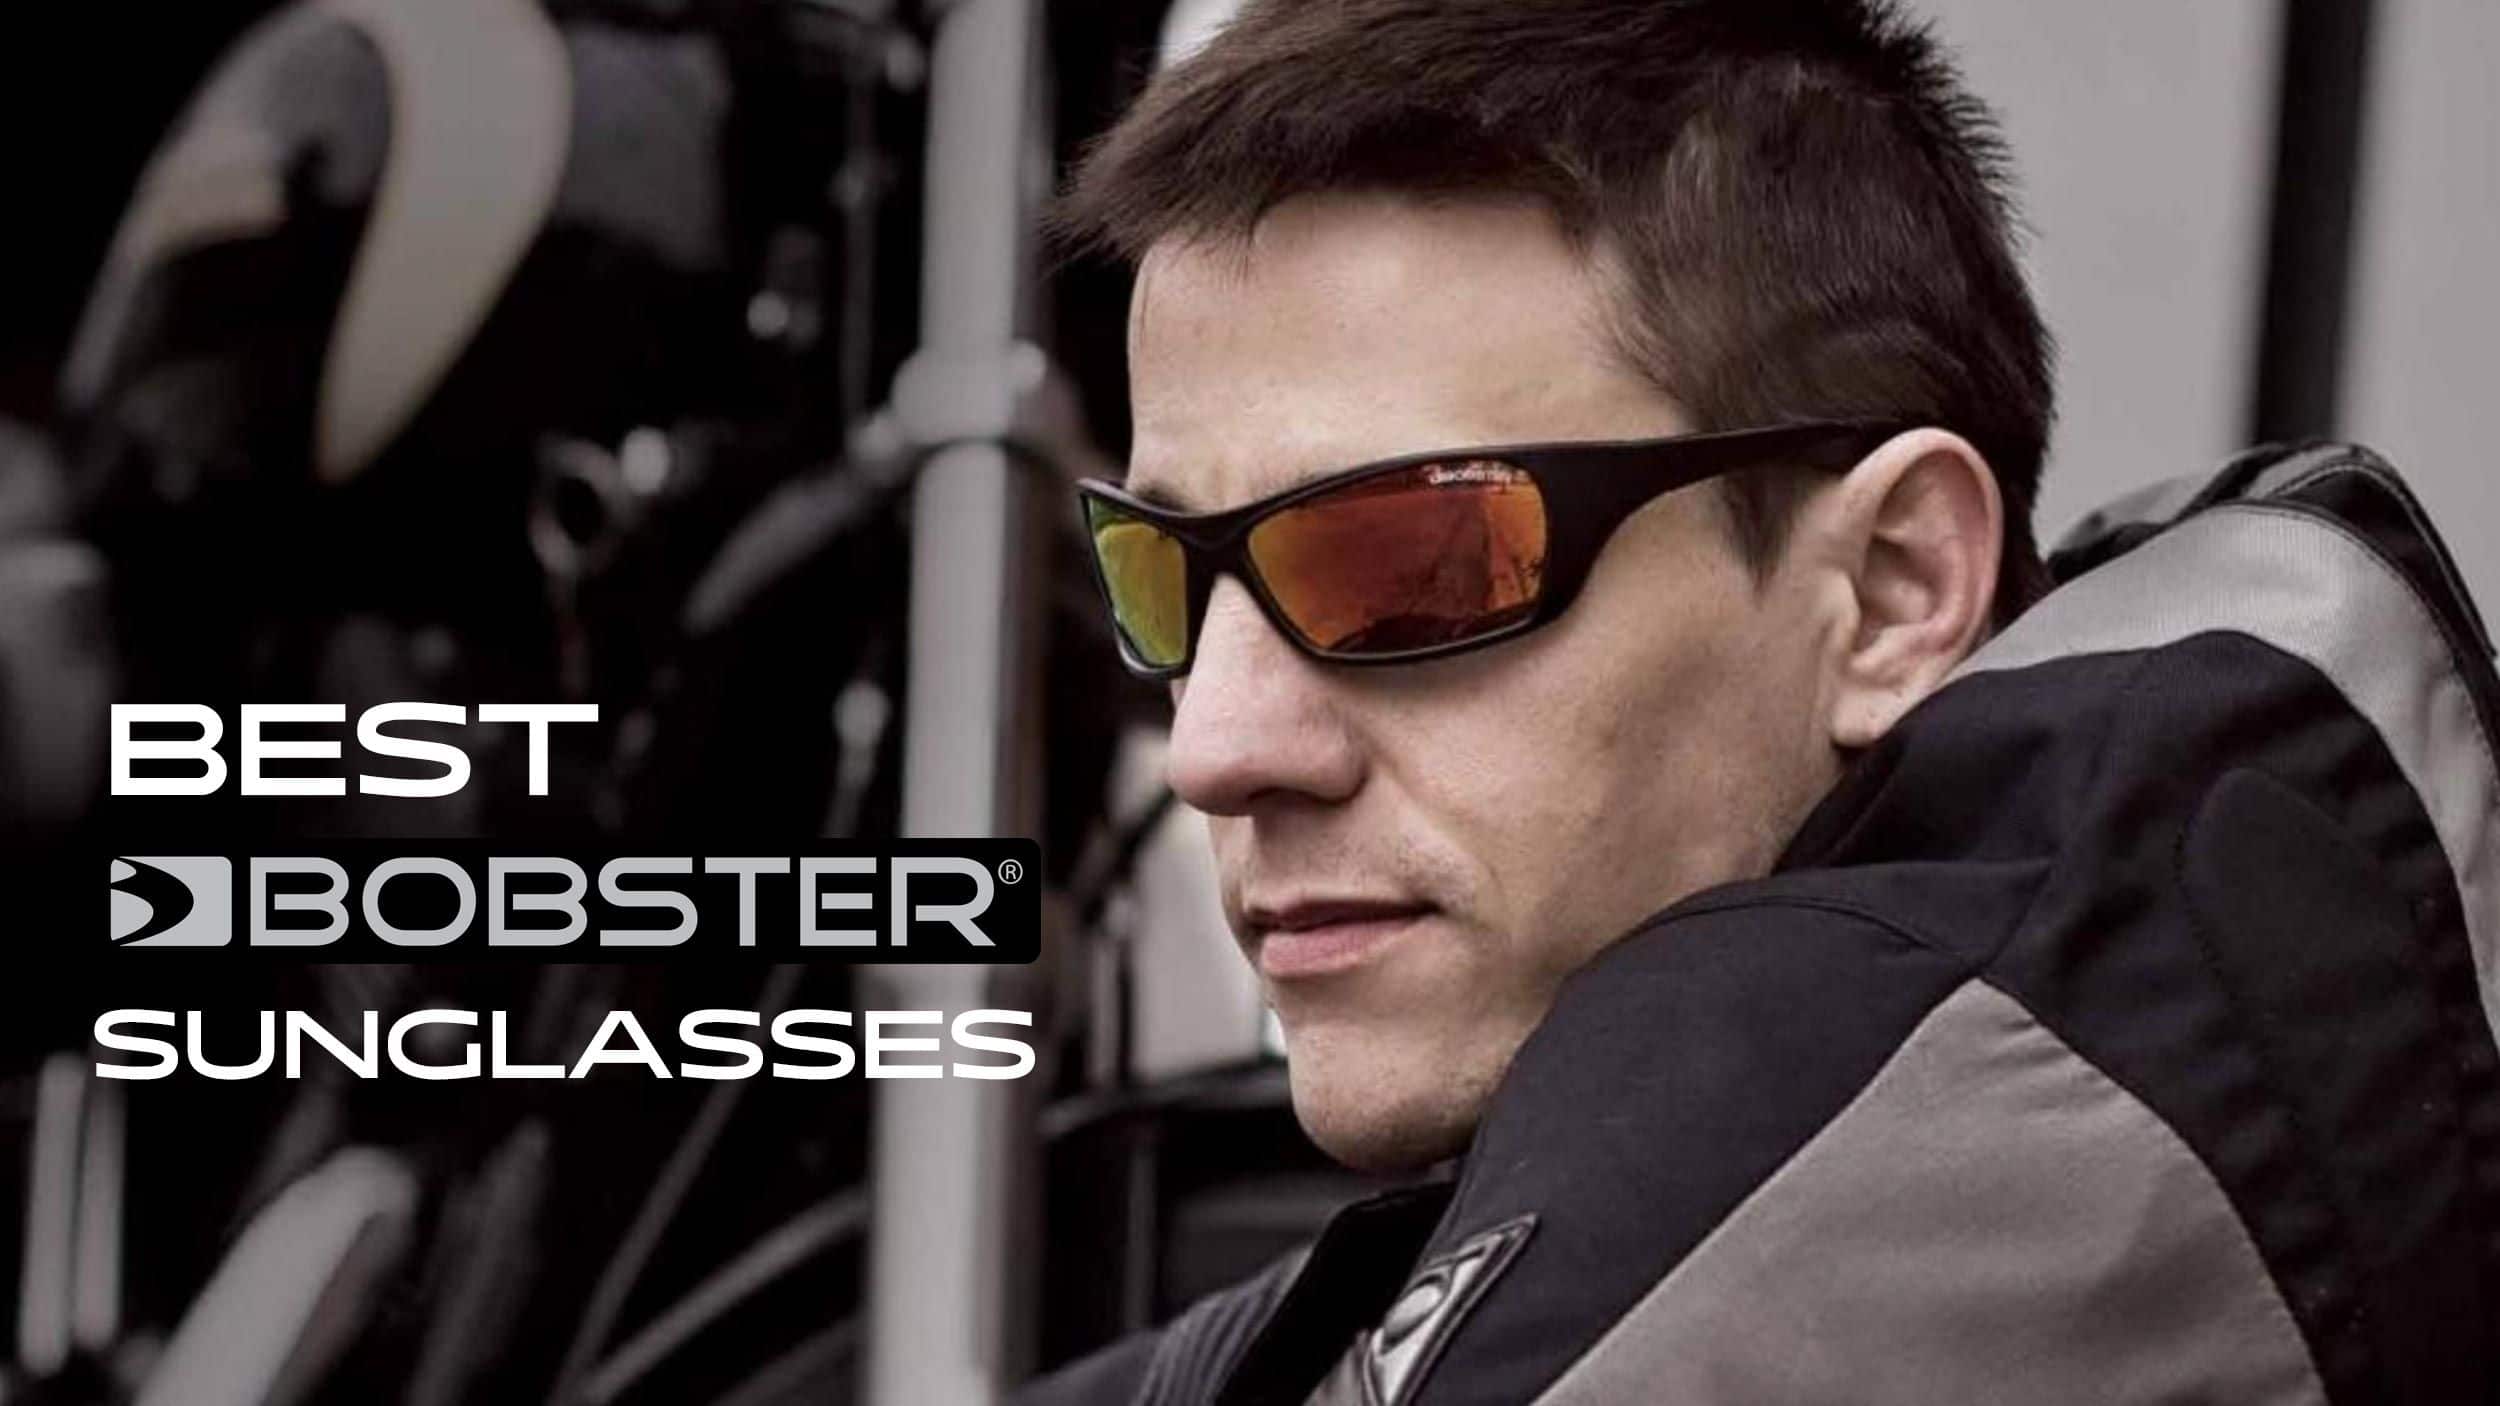 Five Best Bobster Sunglasses Header